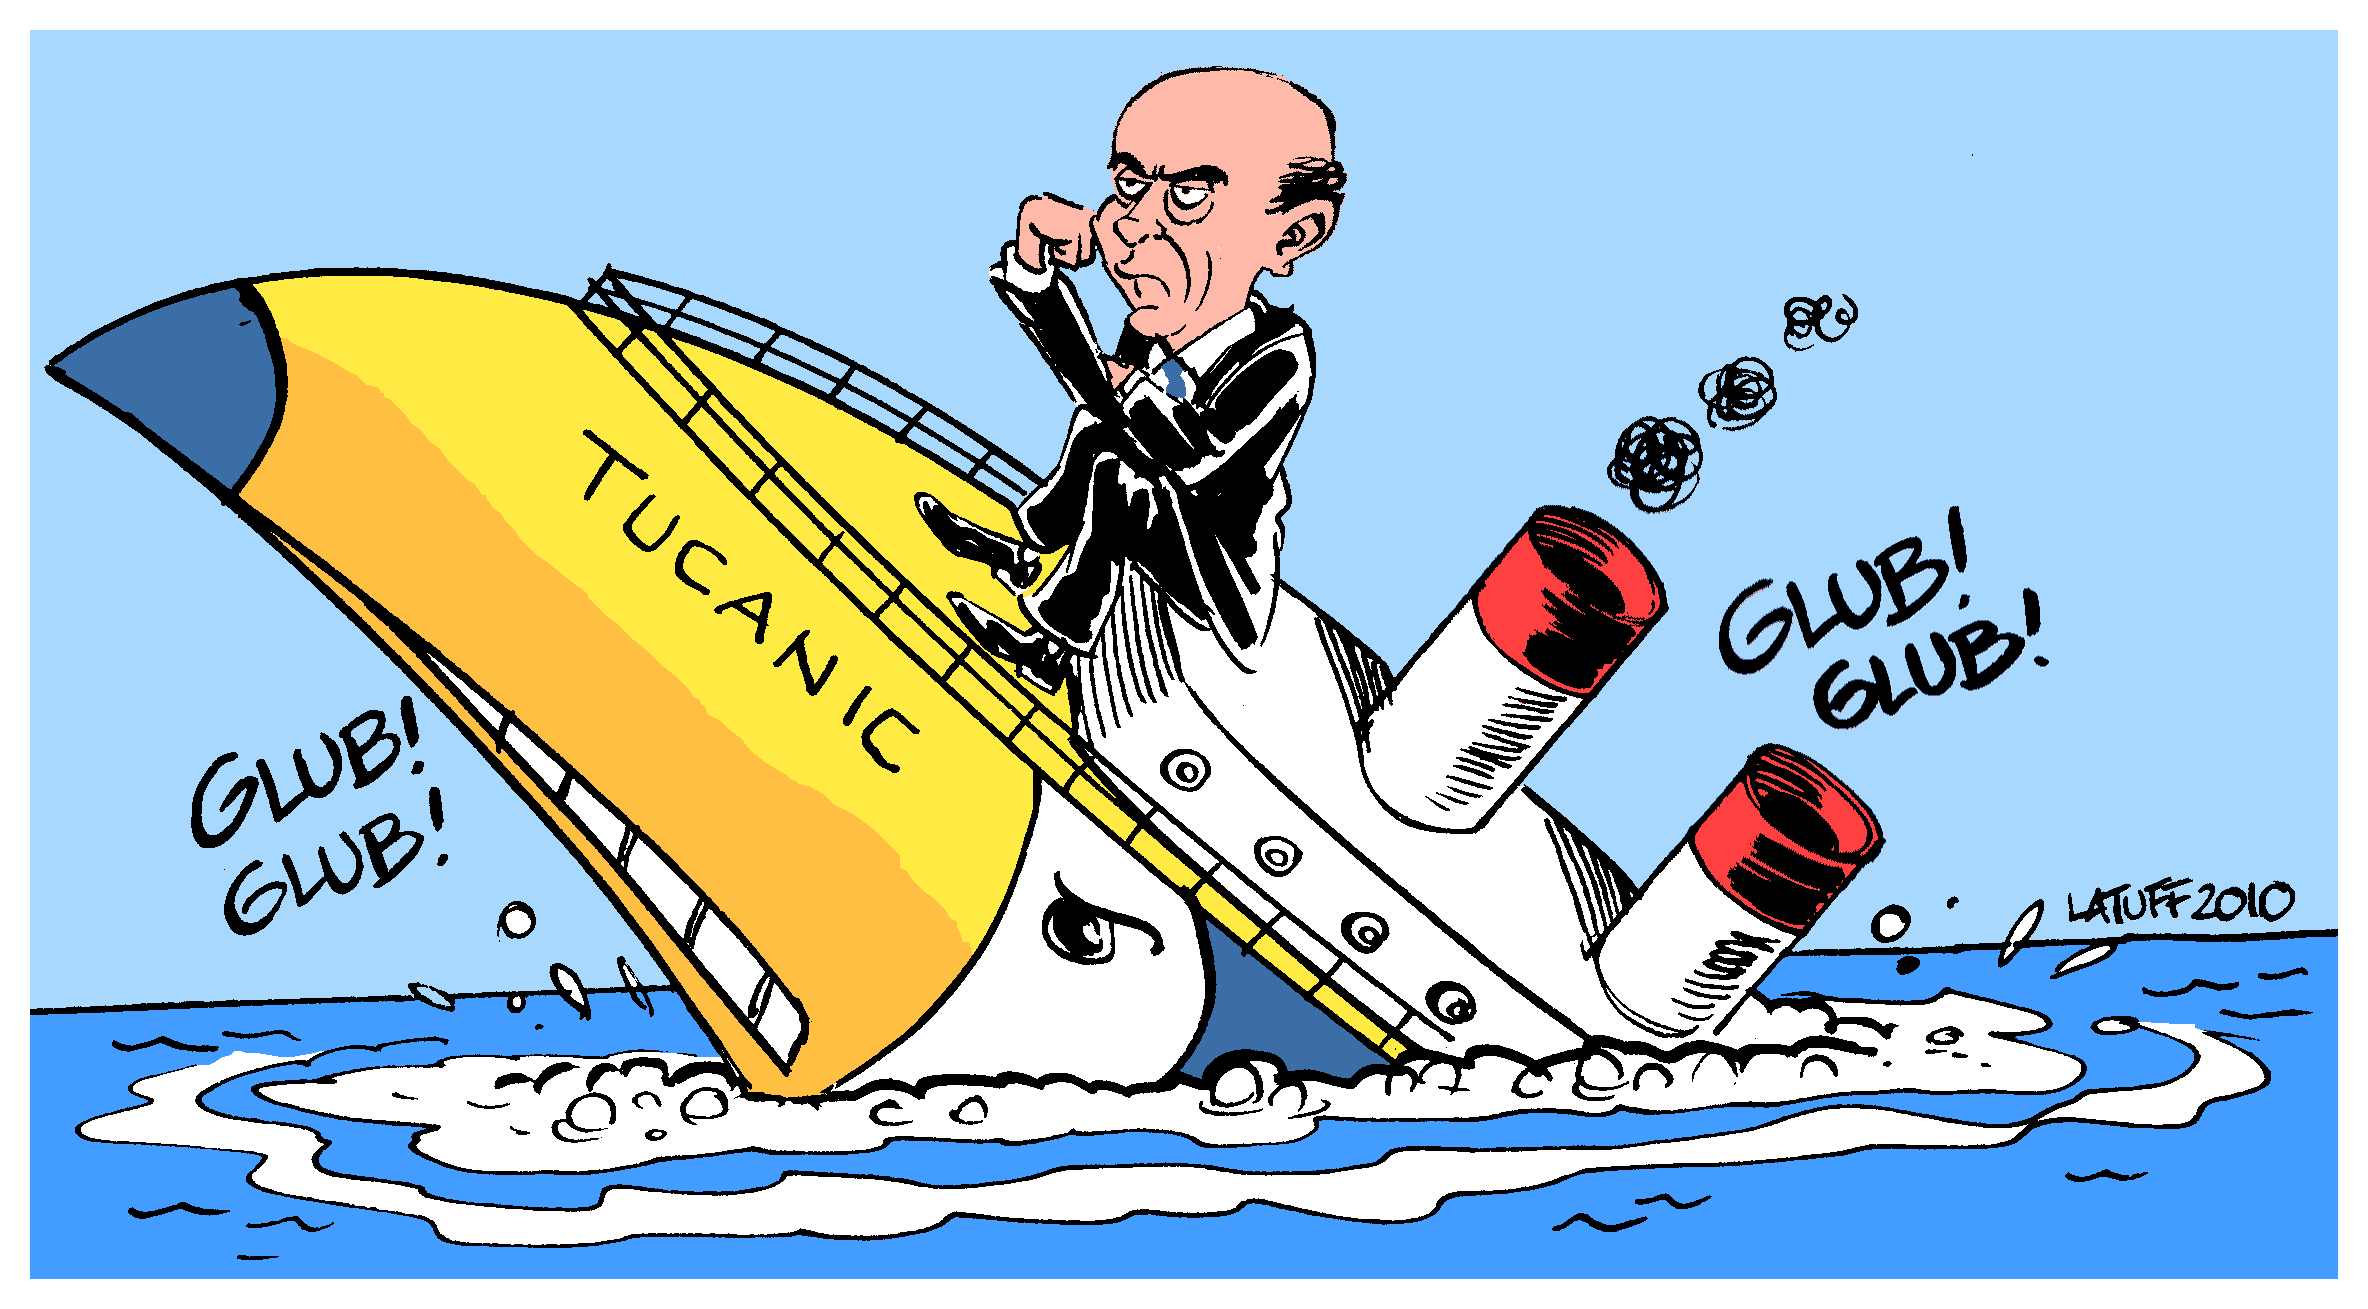 José Serra on the 'Tucanic'